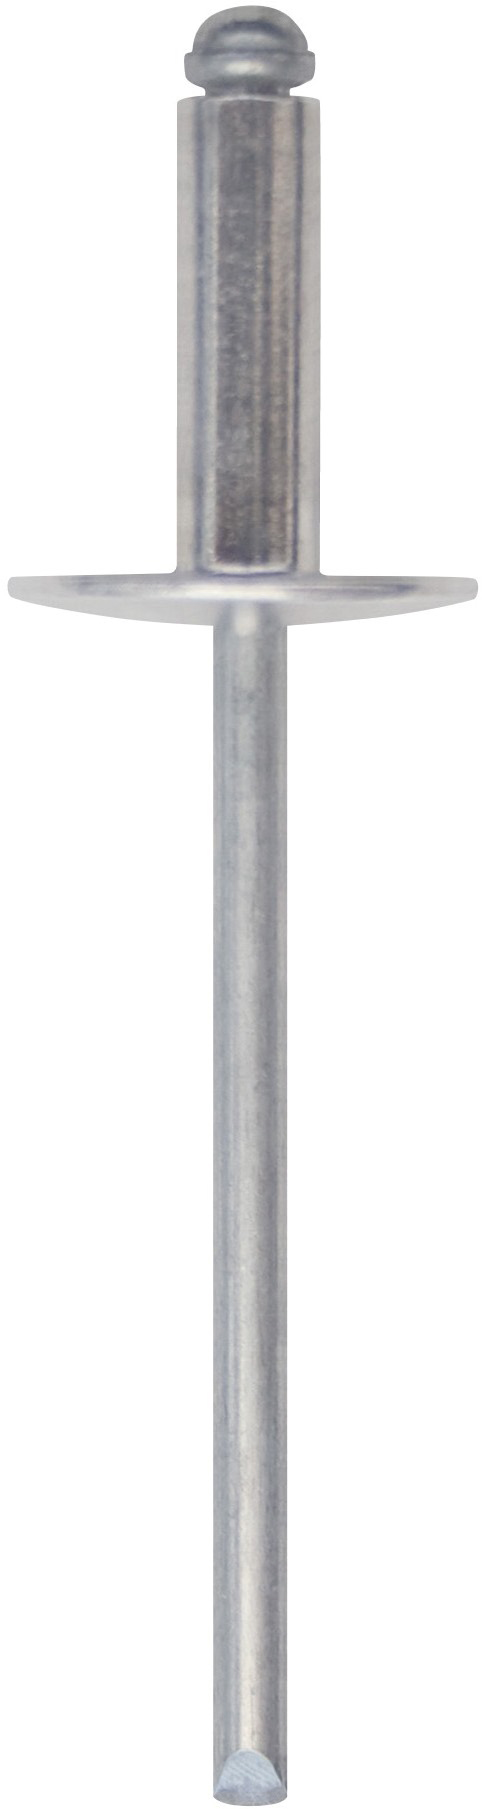 Cod. 0300104800800 - RIVEX Rivetto in alluminio con testa larga